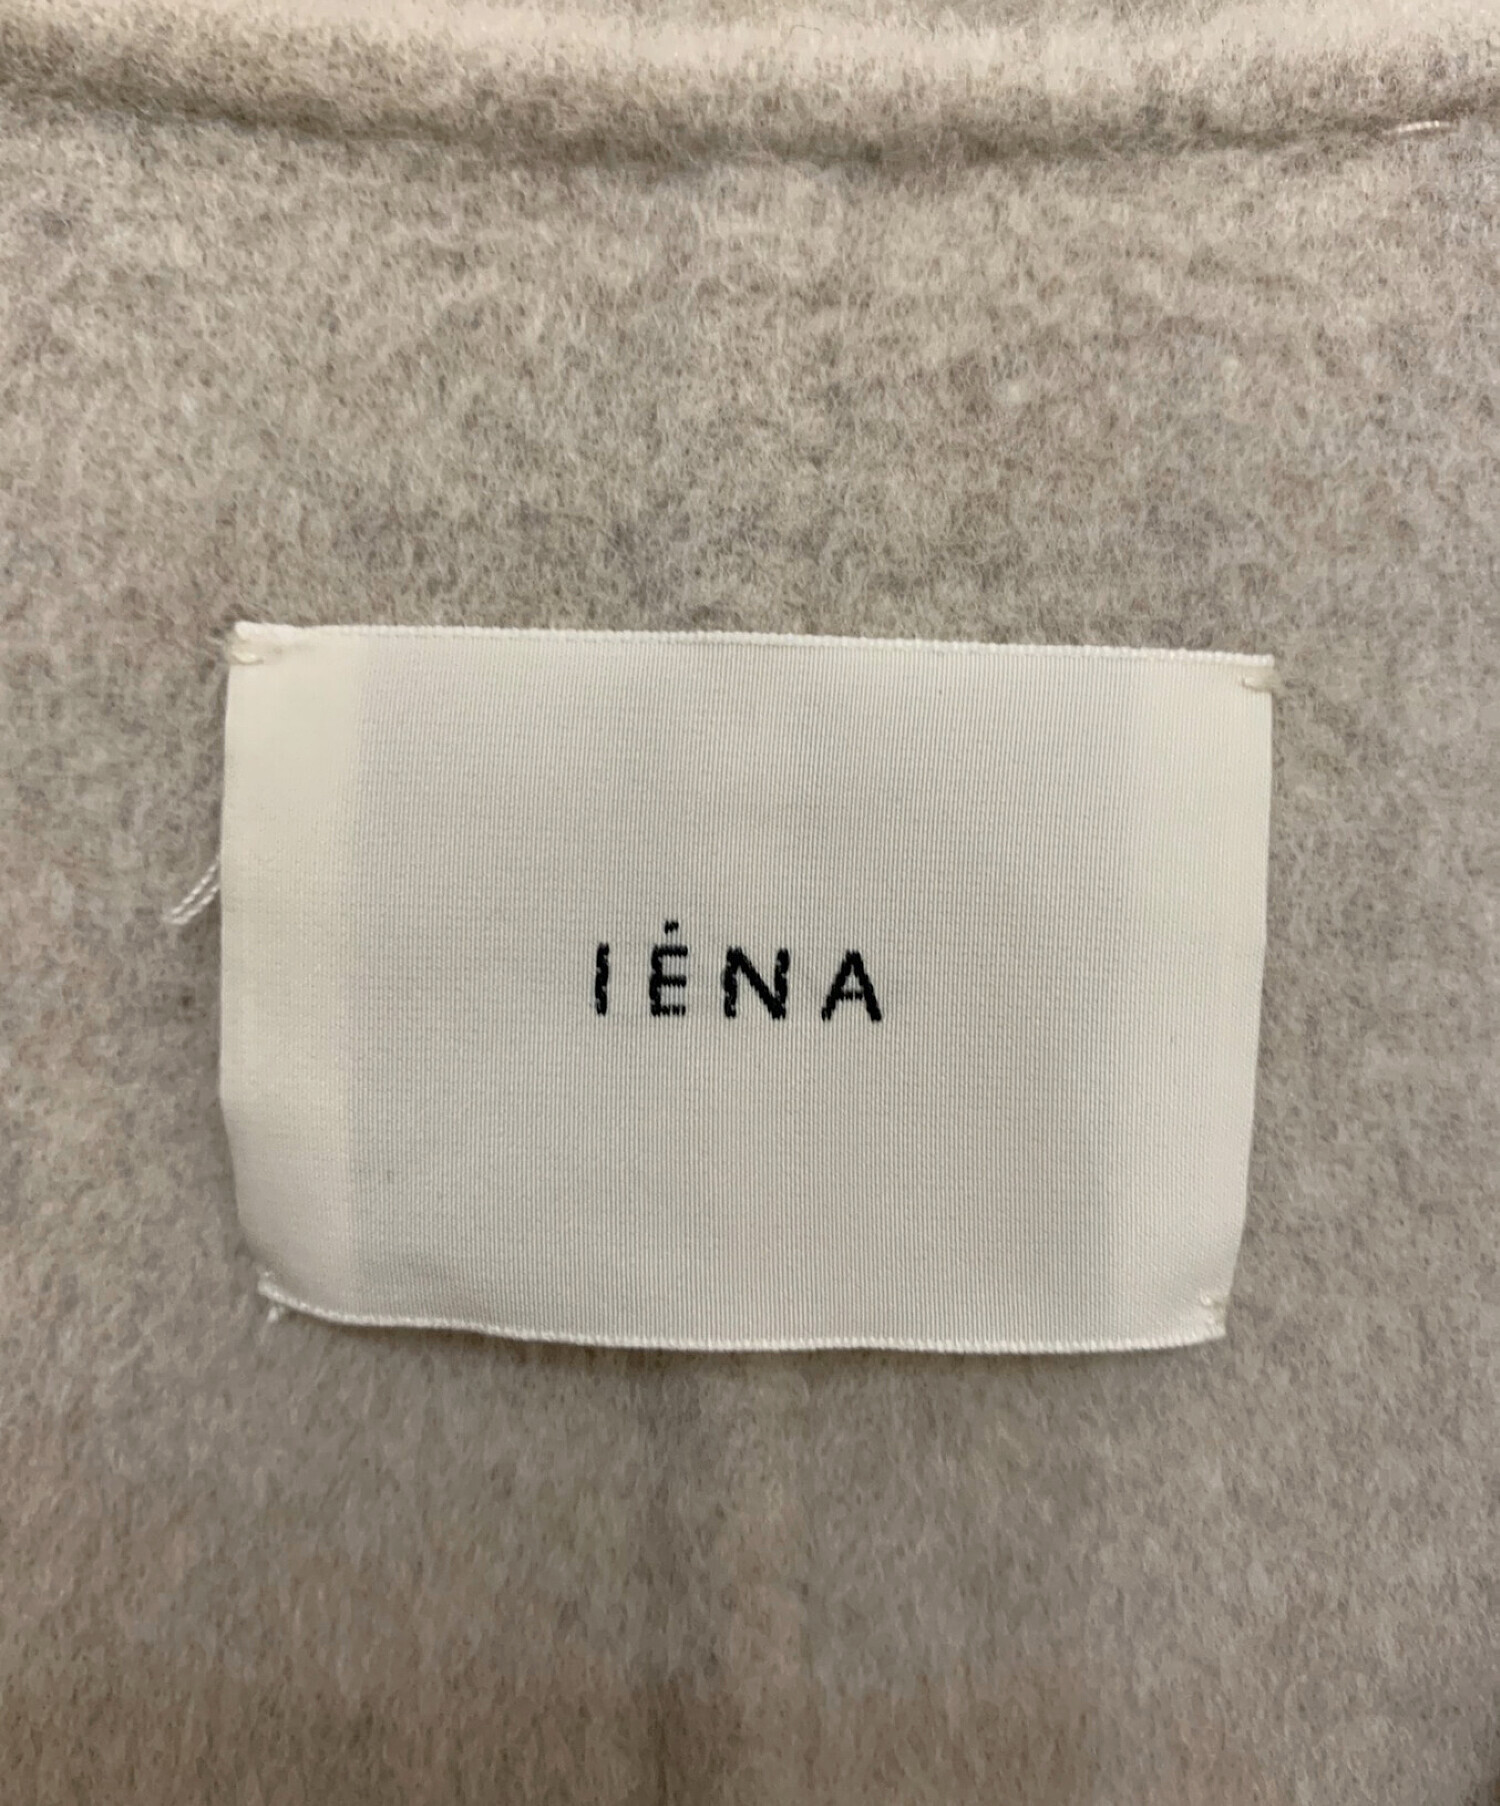 IENA (イエナ) スーパー160ダブルフェイスオーバーコート グレー サイズ:38